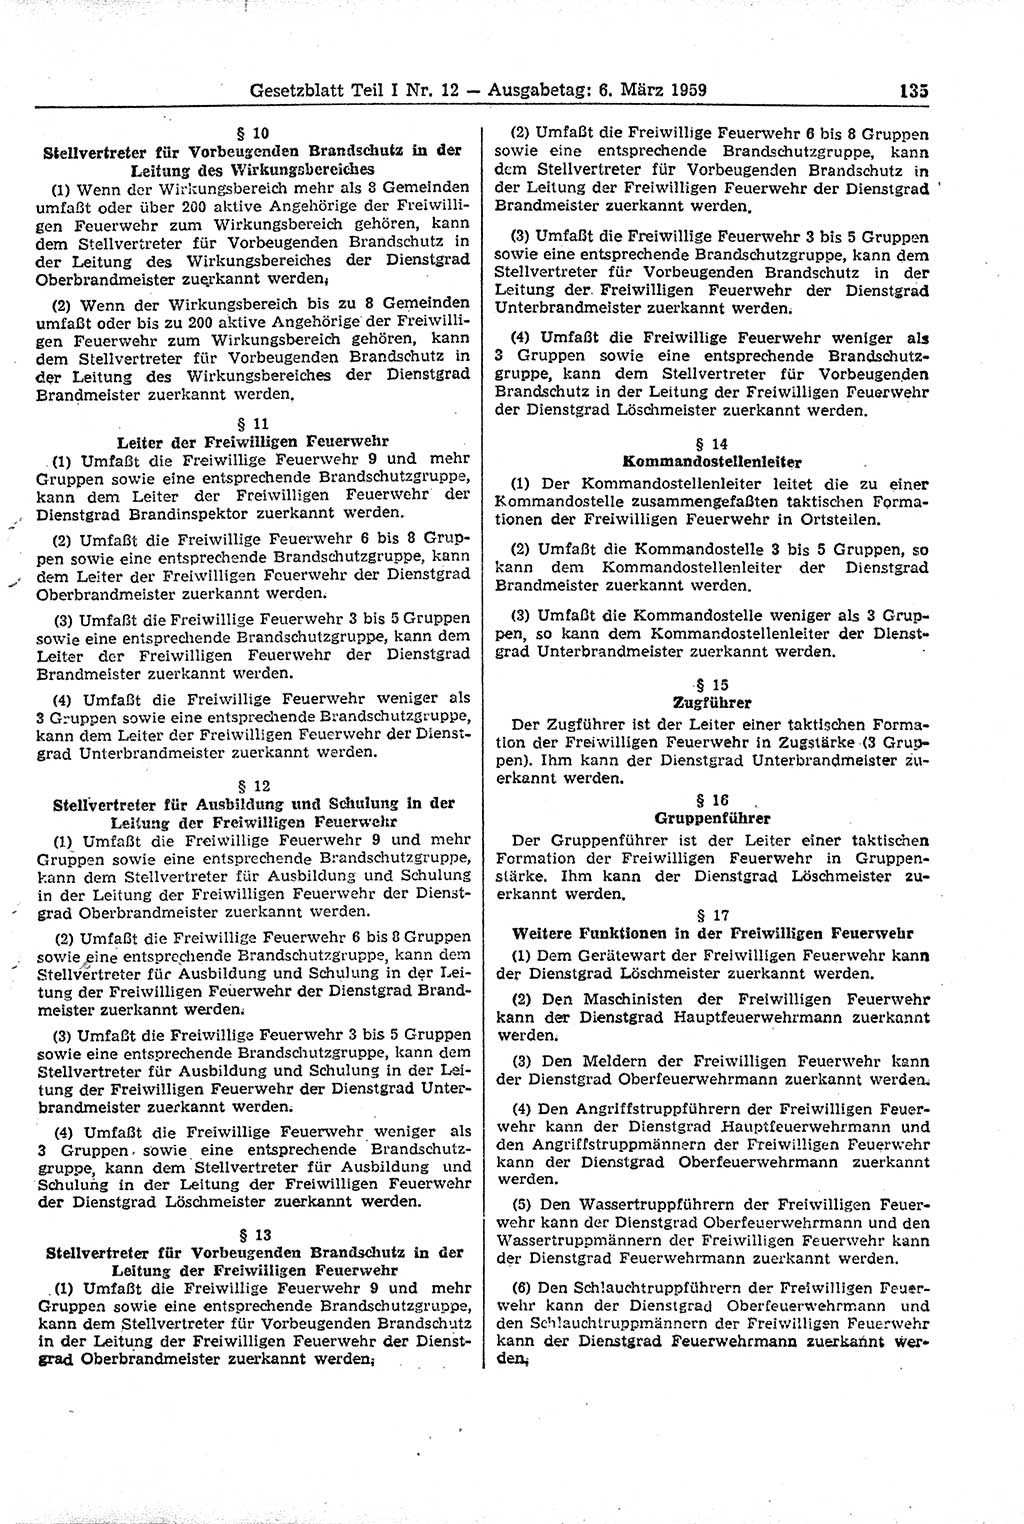 Gesetzblatt (GBl.) der Deutschen Demokratischen Republik (DDR) Teil Ⅰ 1959, Seite 135 (GBl. DDR Ⅰ 1959, S. 135)